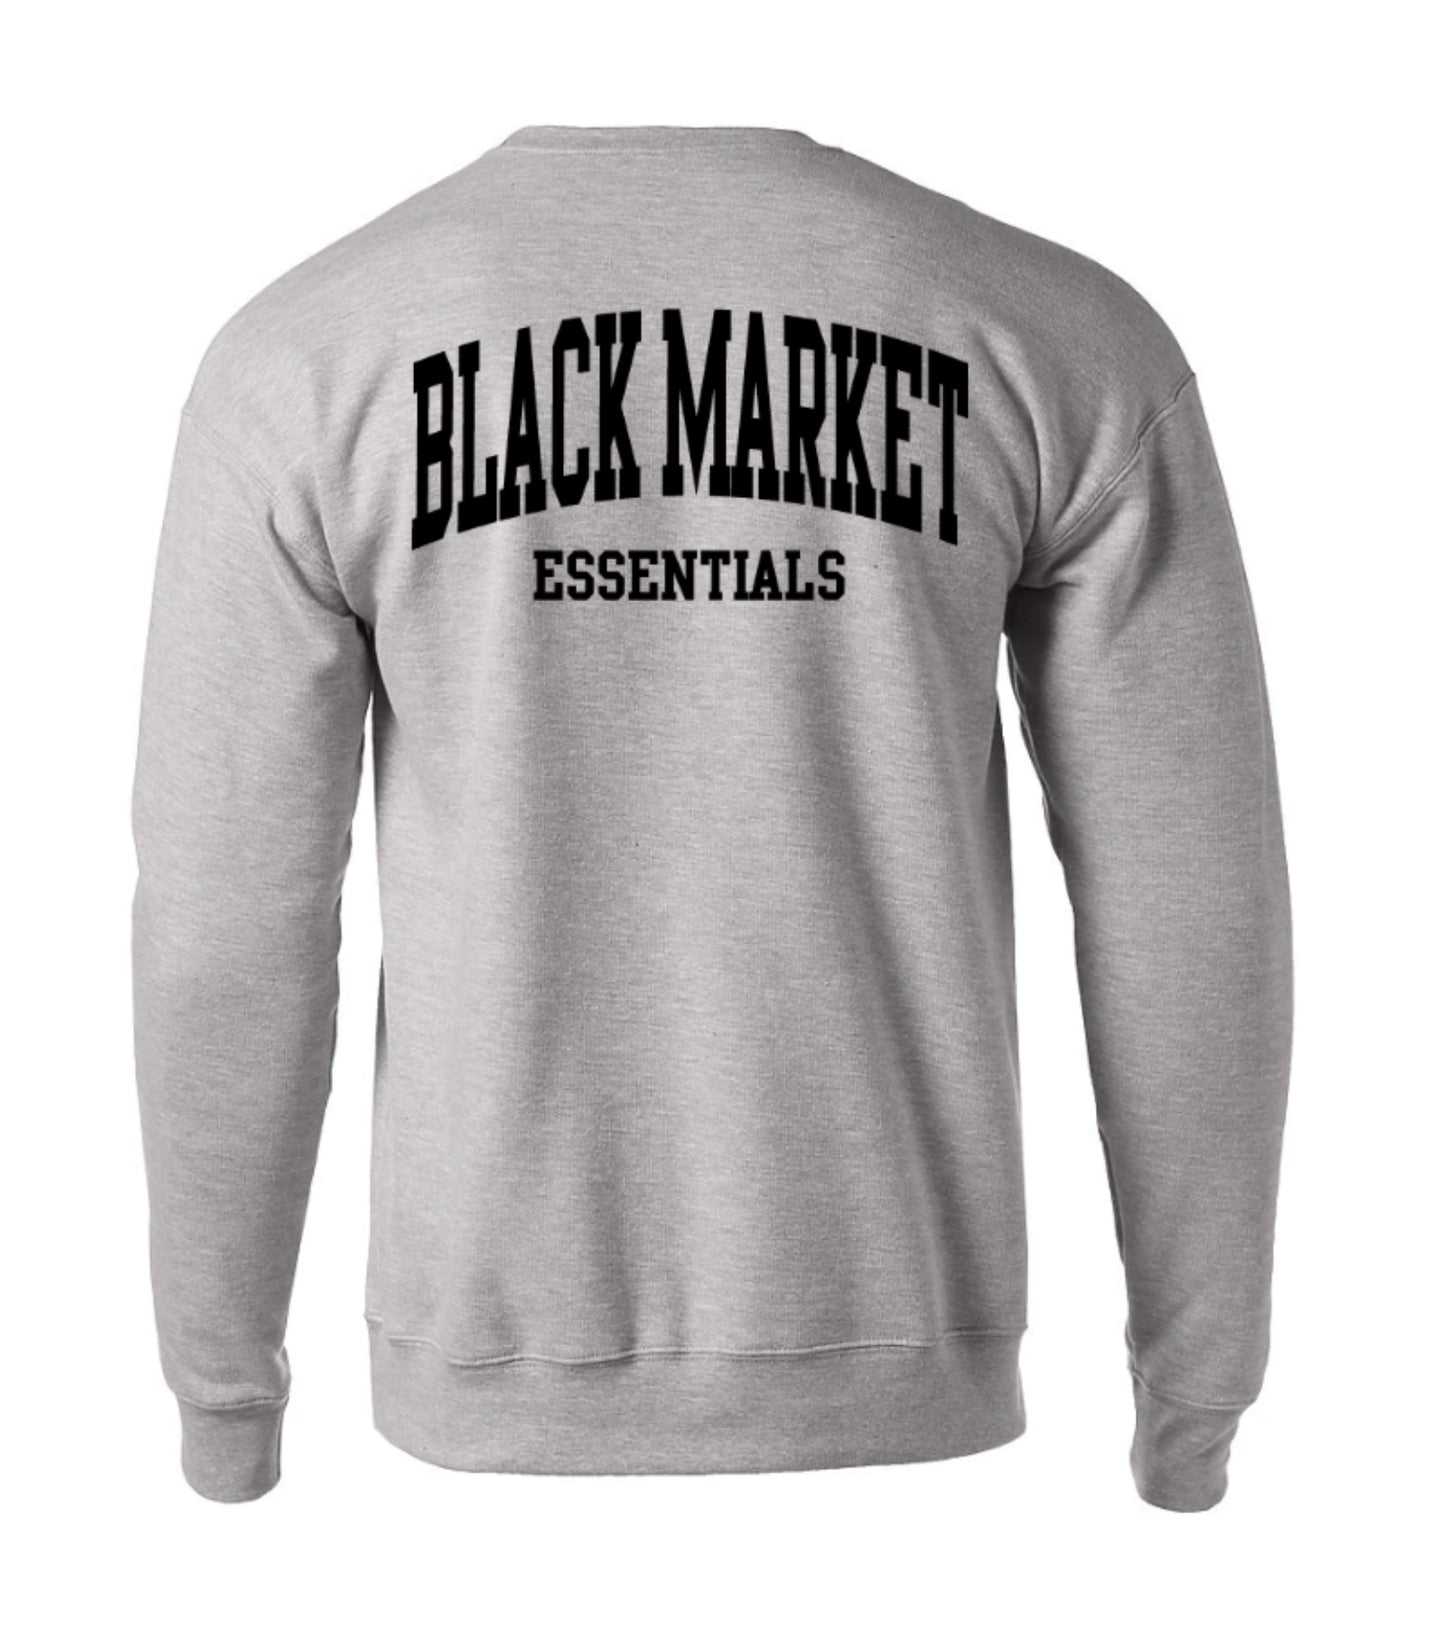 Black Market Essentials Crewneck